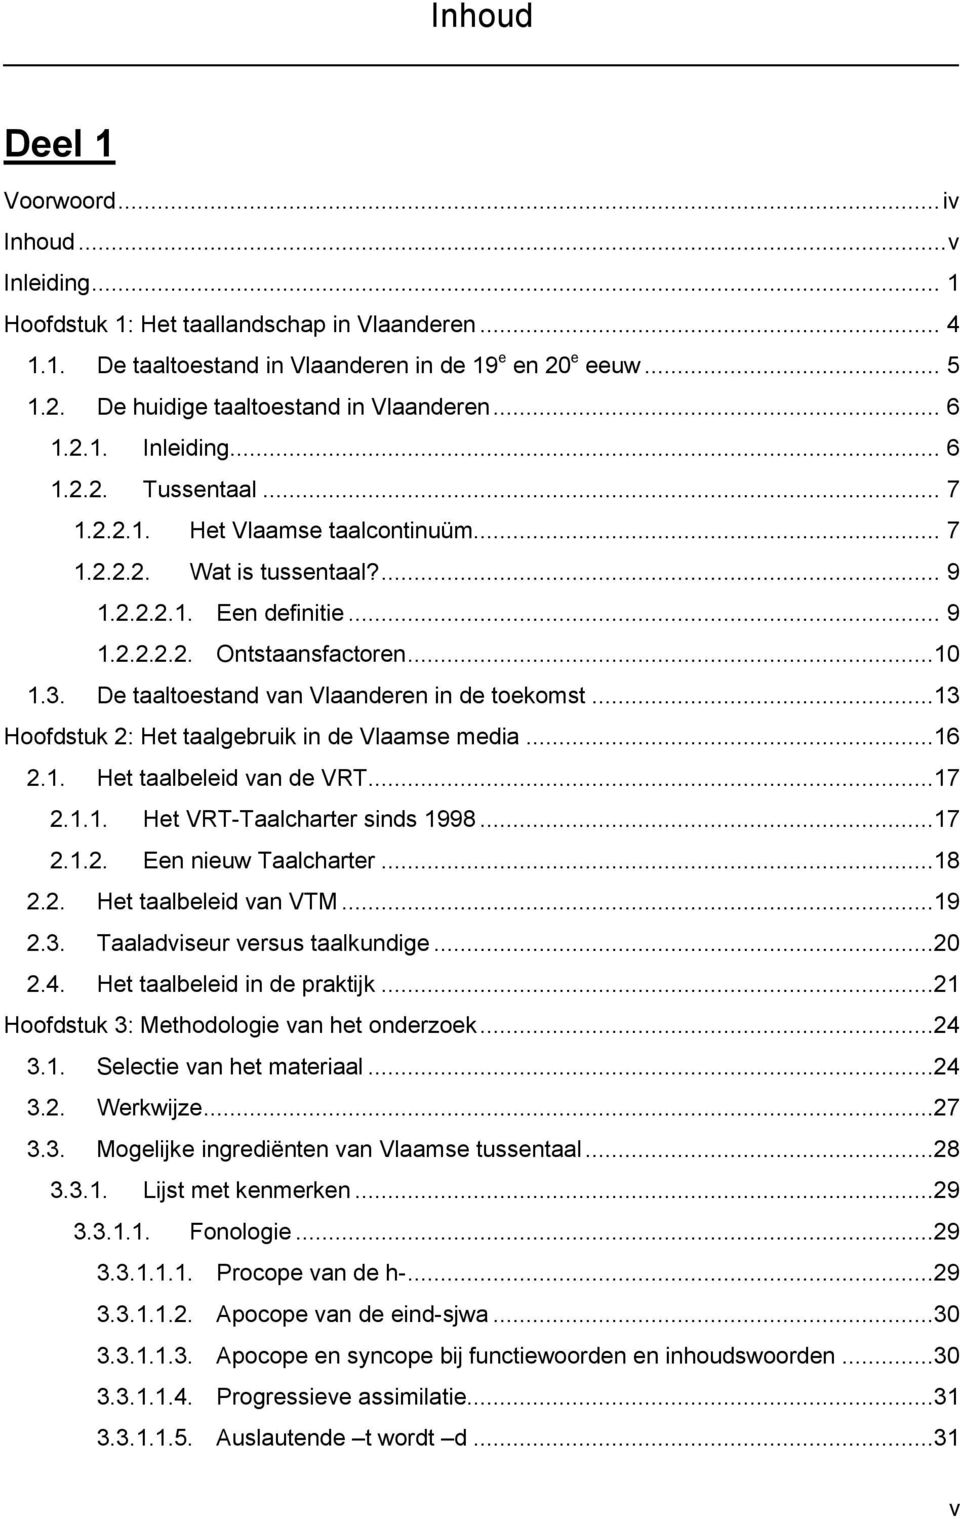 De taaltoestand van Vlaanderen in de toekomst...13 Hoofdstuk 2: Het taalgebruik in de Vlaamse media...16 2.1. Het taalbeleid van de VRT...17 2.1.1. Het VRT-Taalcharter sinds 1998...17 2.1.2. Een nieuw Taalcharter.